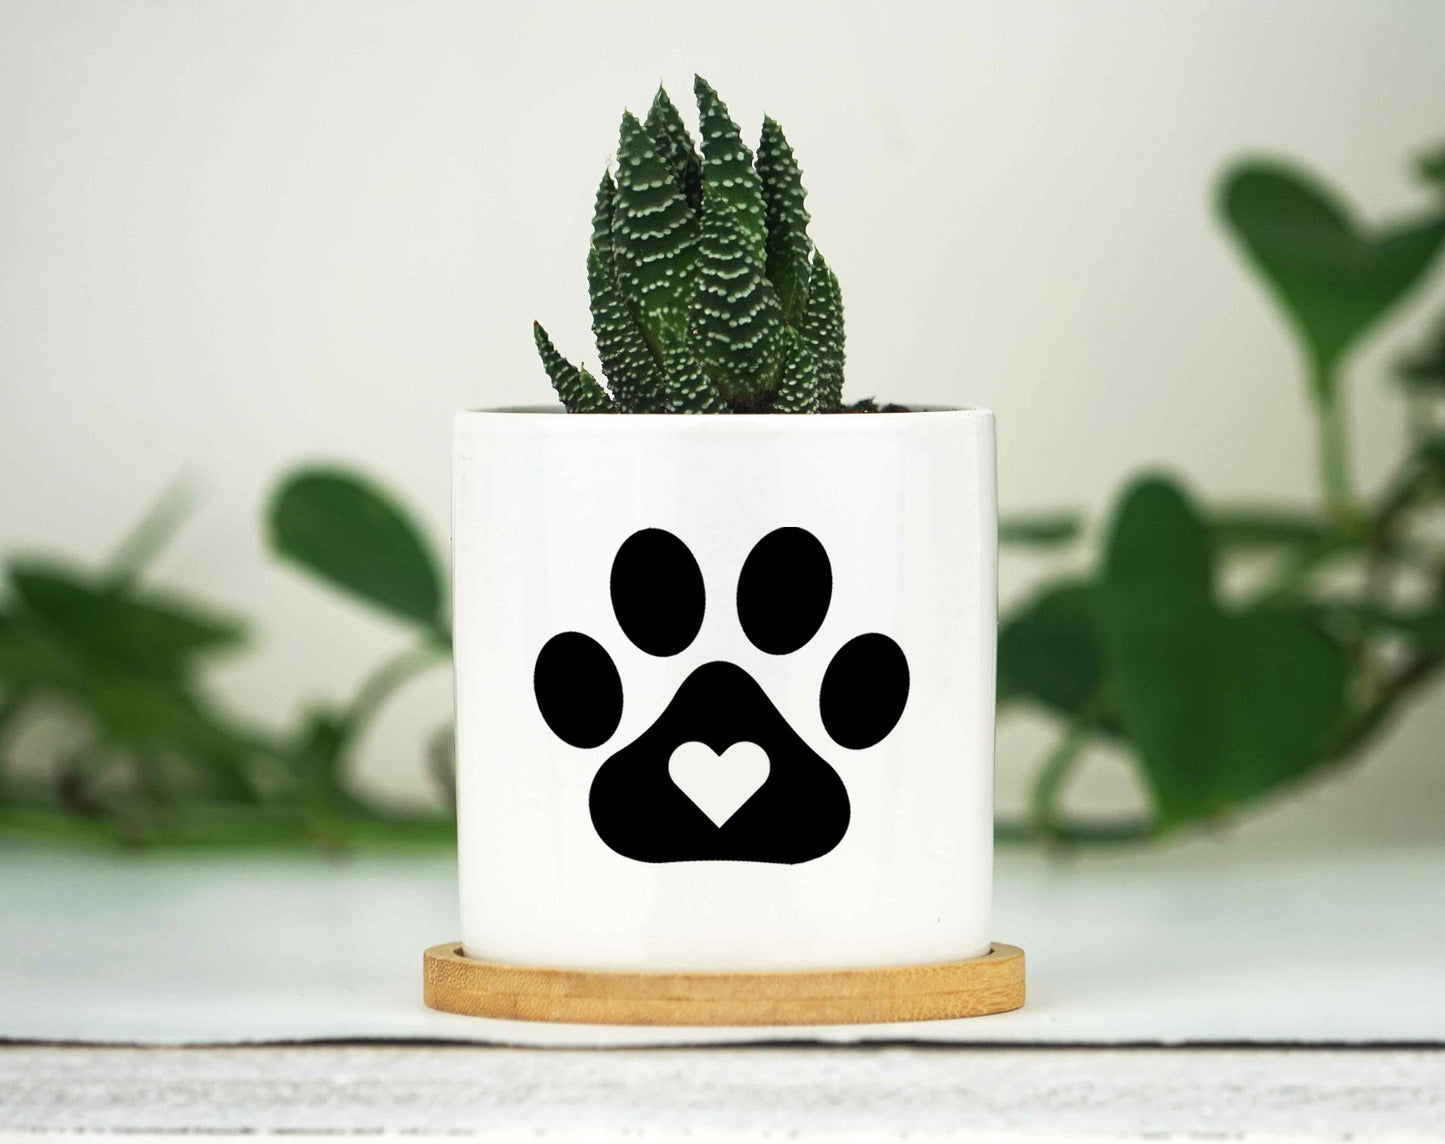 Personalized Pet Memorial Printed 4" or 6" - Wood Photo Block - Dog Loss Gift - Dog Memorial Frame - Pet Loss Gift Dog - Pet Memorial